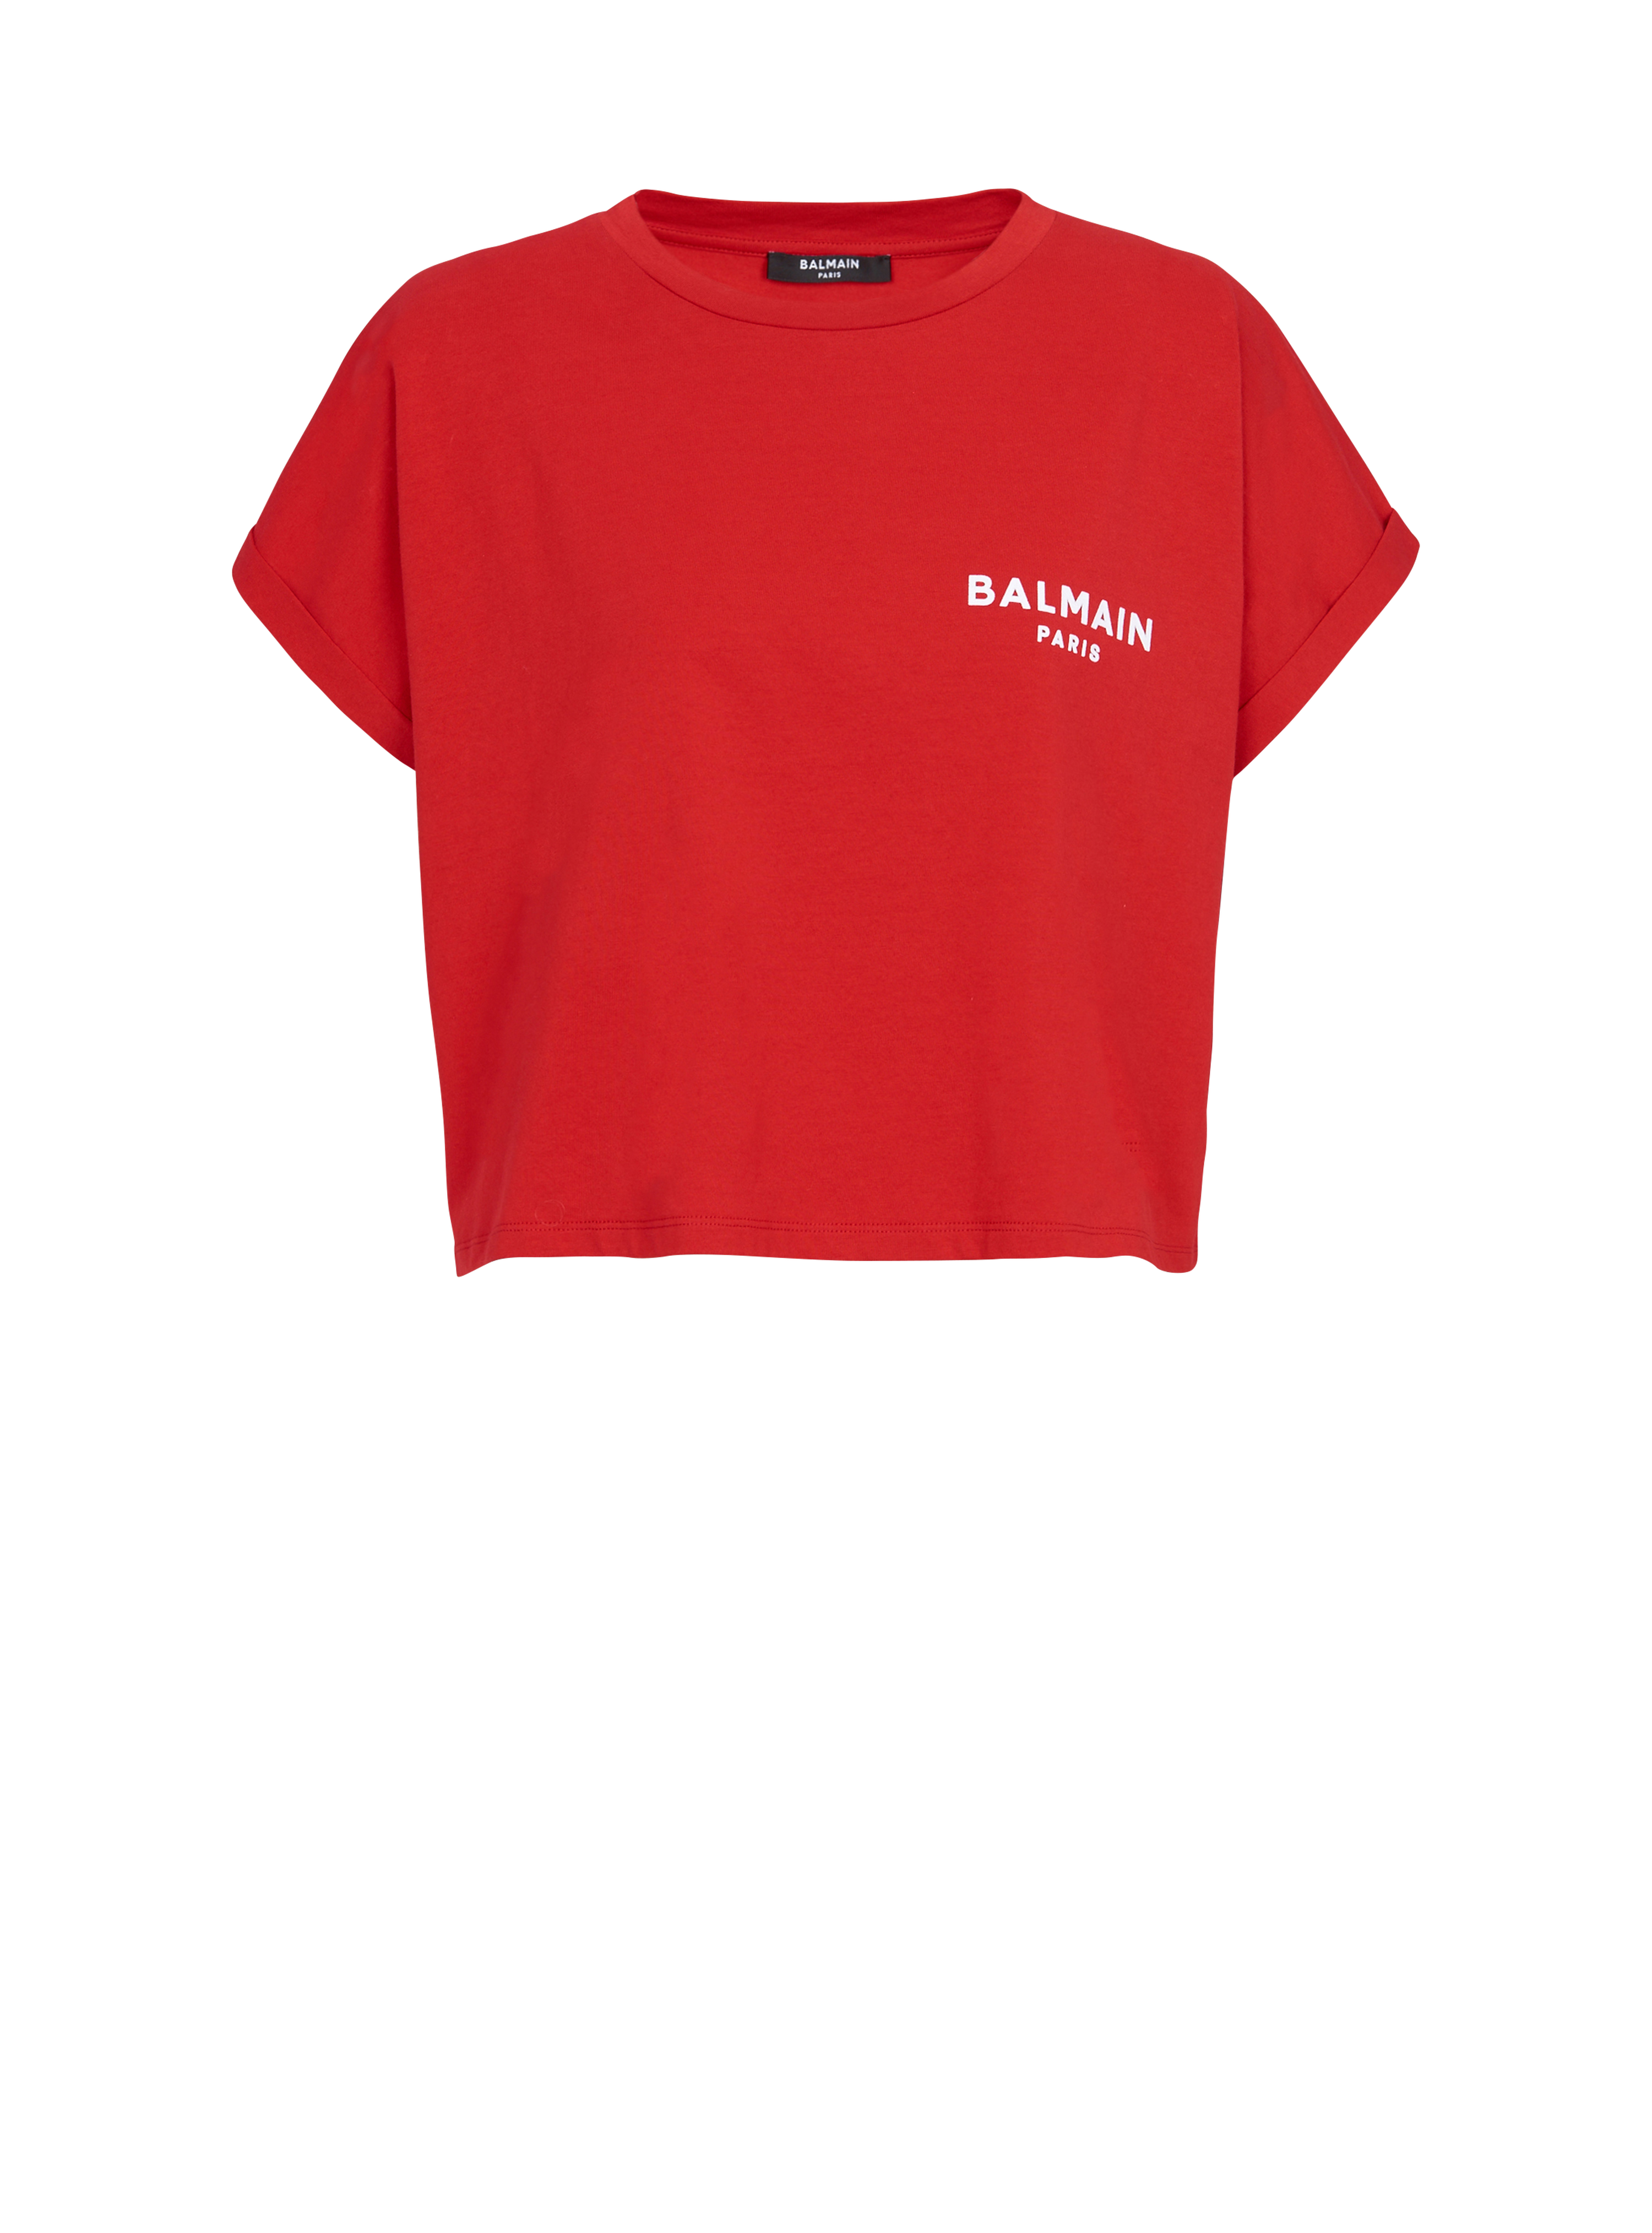 T-shirt court en coton floqué petit logo Balmain, rouge